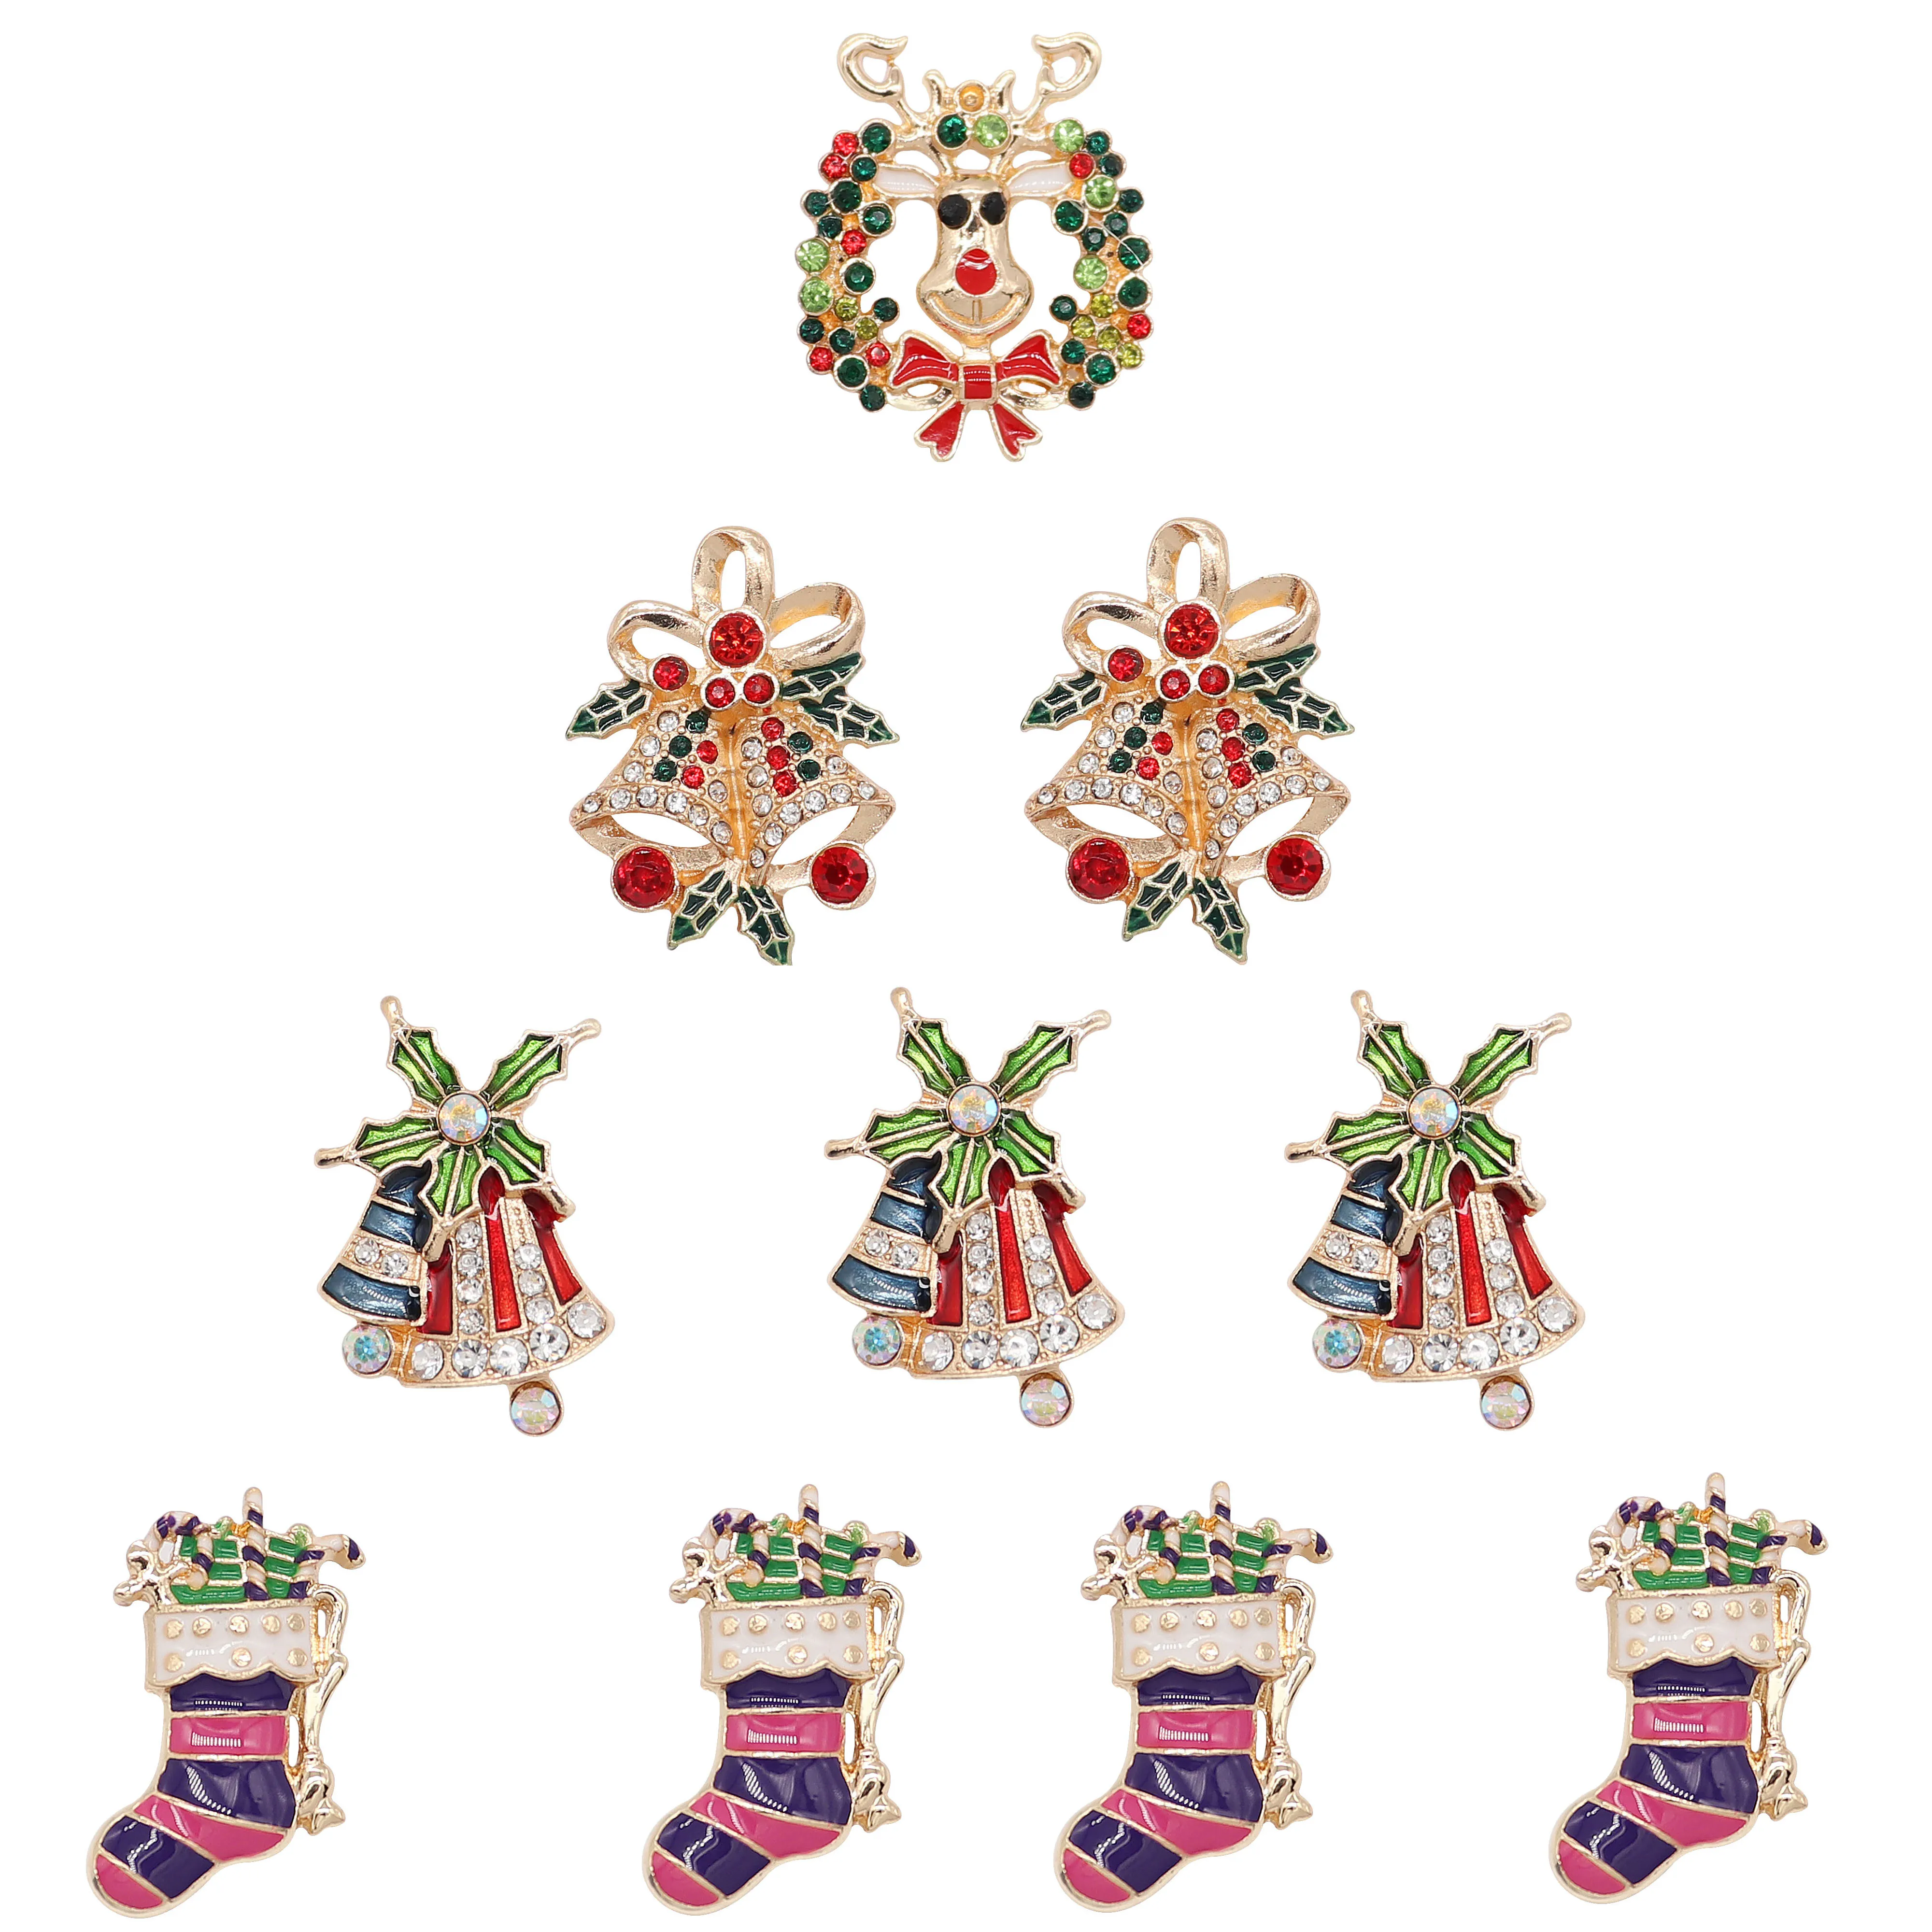 Мода красота Счастливого Рождества 18 мм кнопки подходит для браслета с защелкой ожерелье оснастки ювелирные изделия оптом для женщин девушки подарки